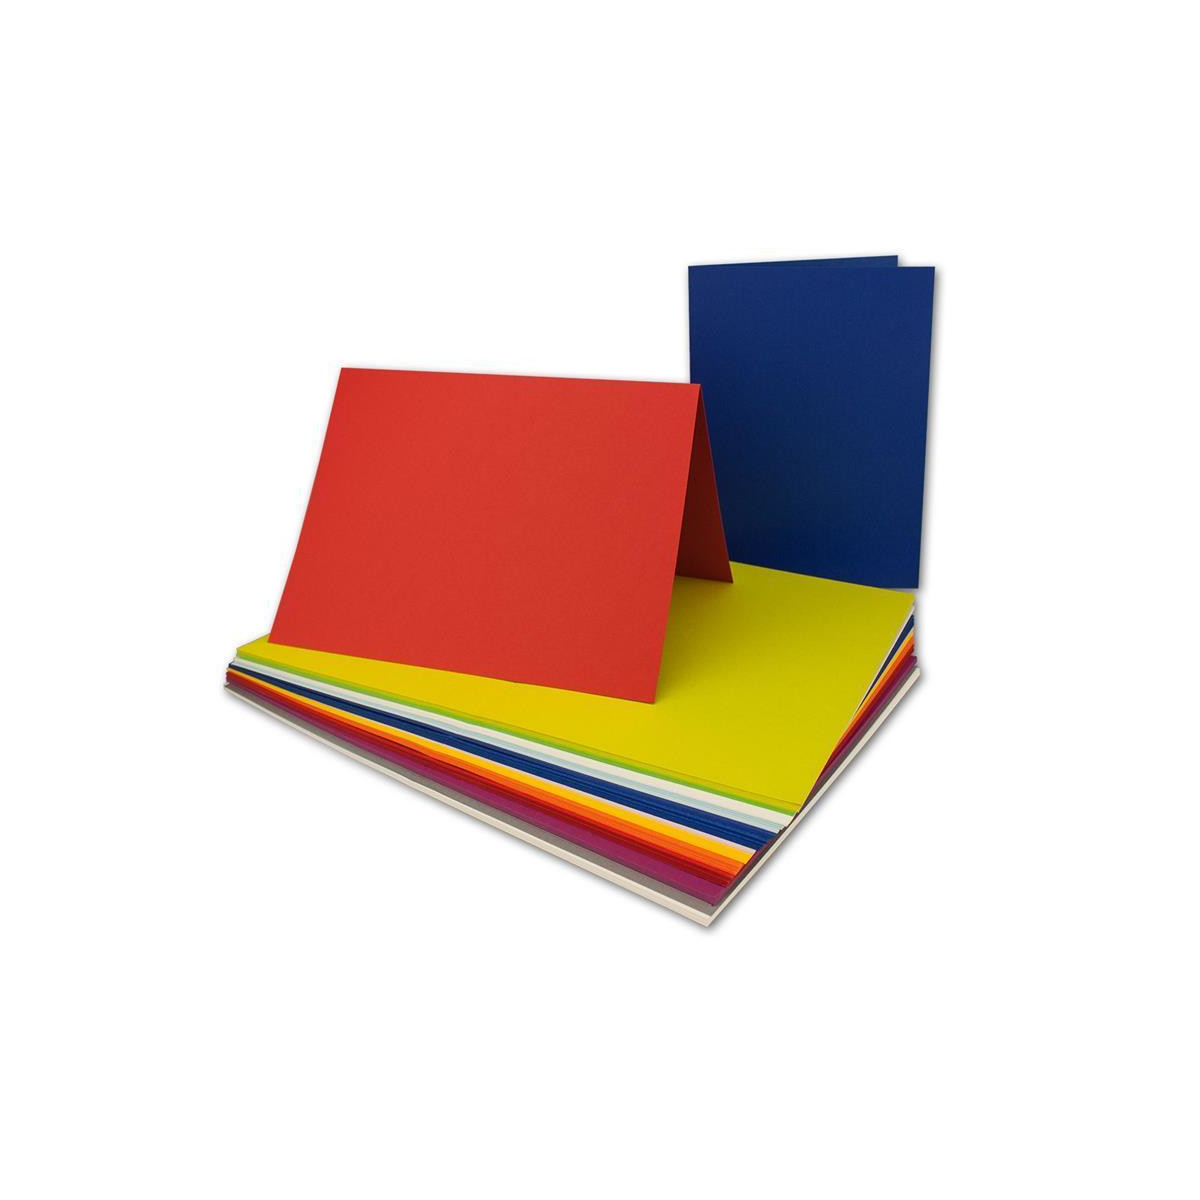 Automatisch het doel Eerlijk 200x farbige Faltkarten farbig gemischt - DIN A5 - 21 x 14,8 cm - Far,  50,00 €